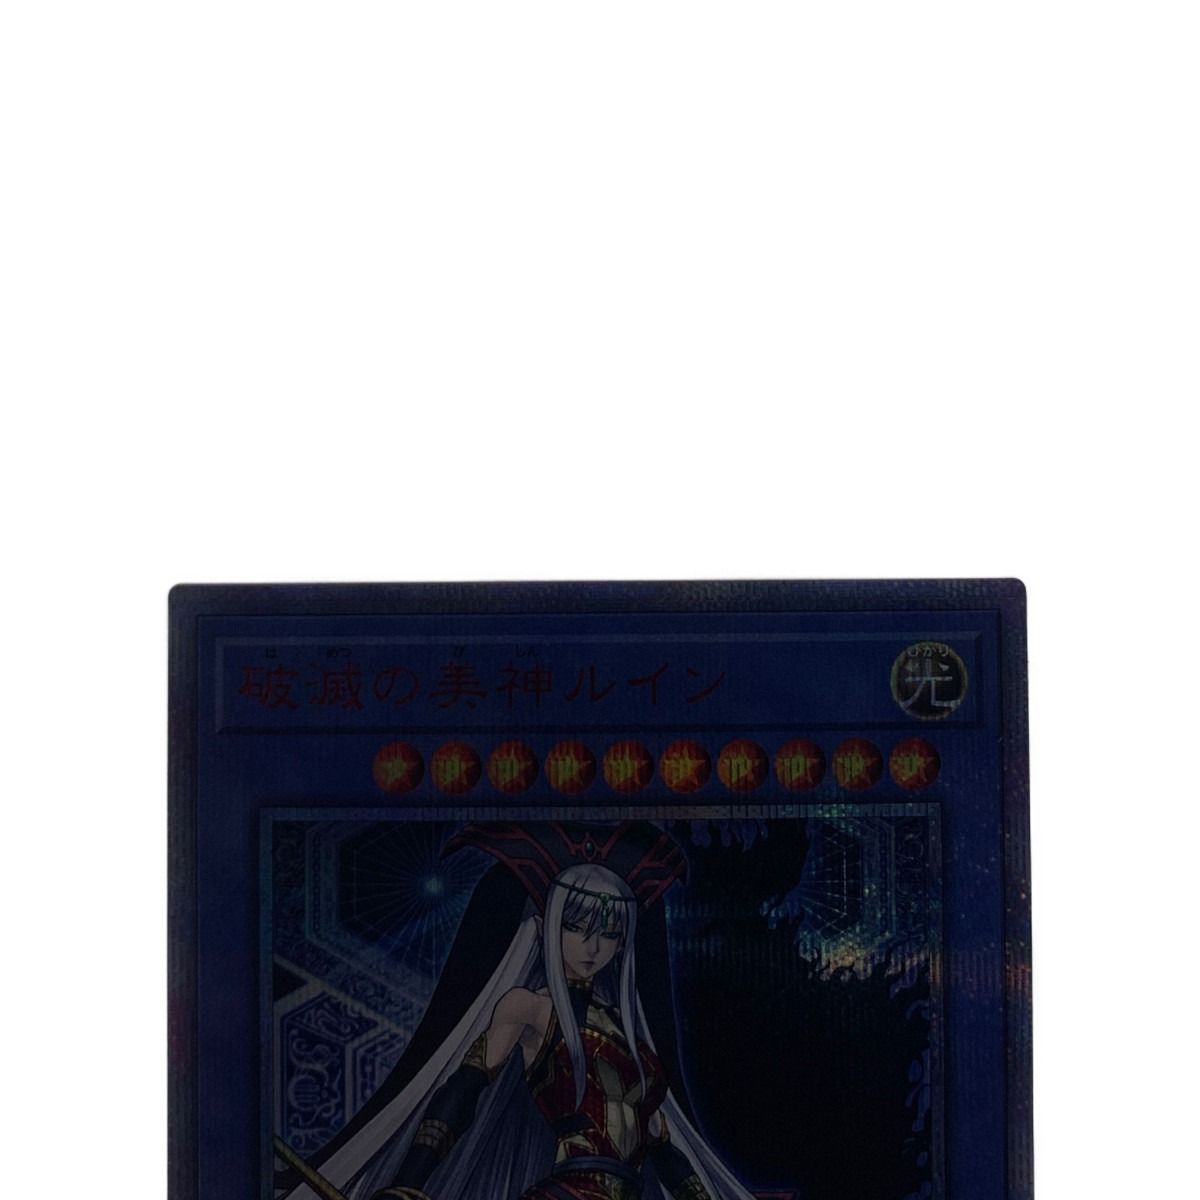 ▽▽ 遊戯王 CYHO-JP029 20SE 破滅の美神ルイン 20thシークレット 